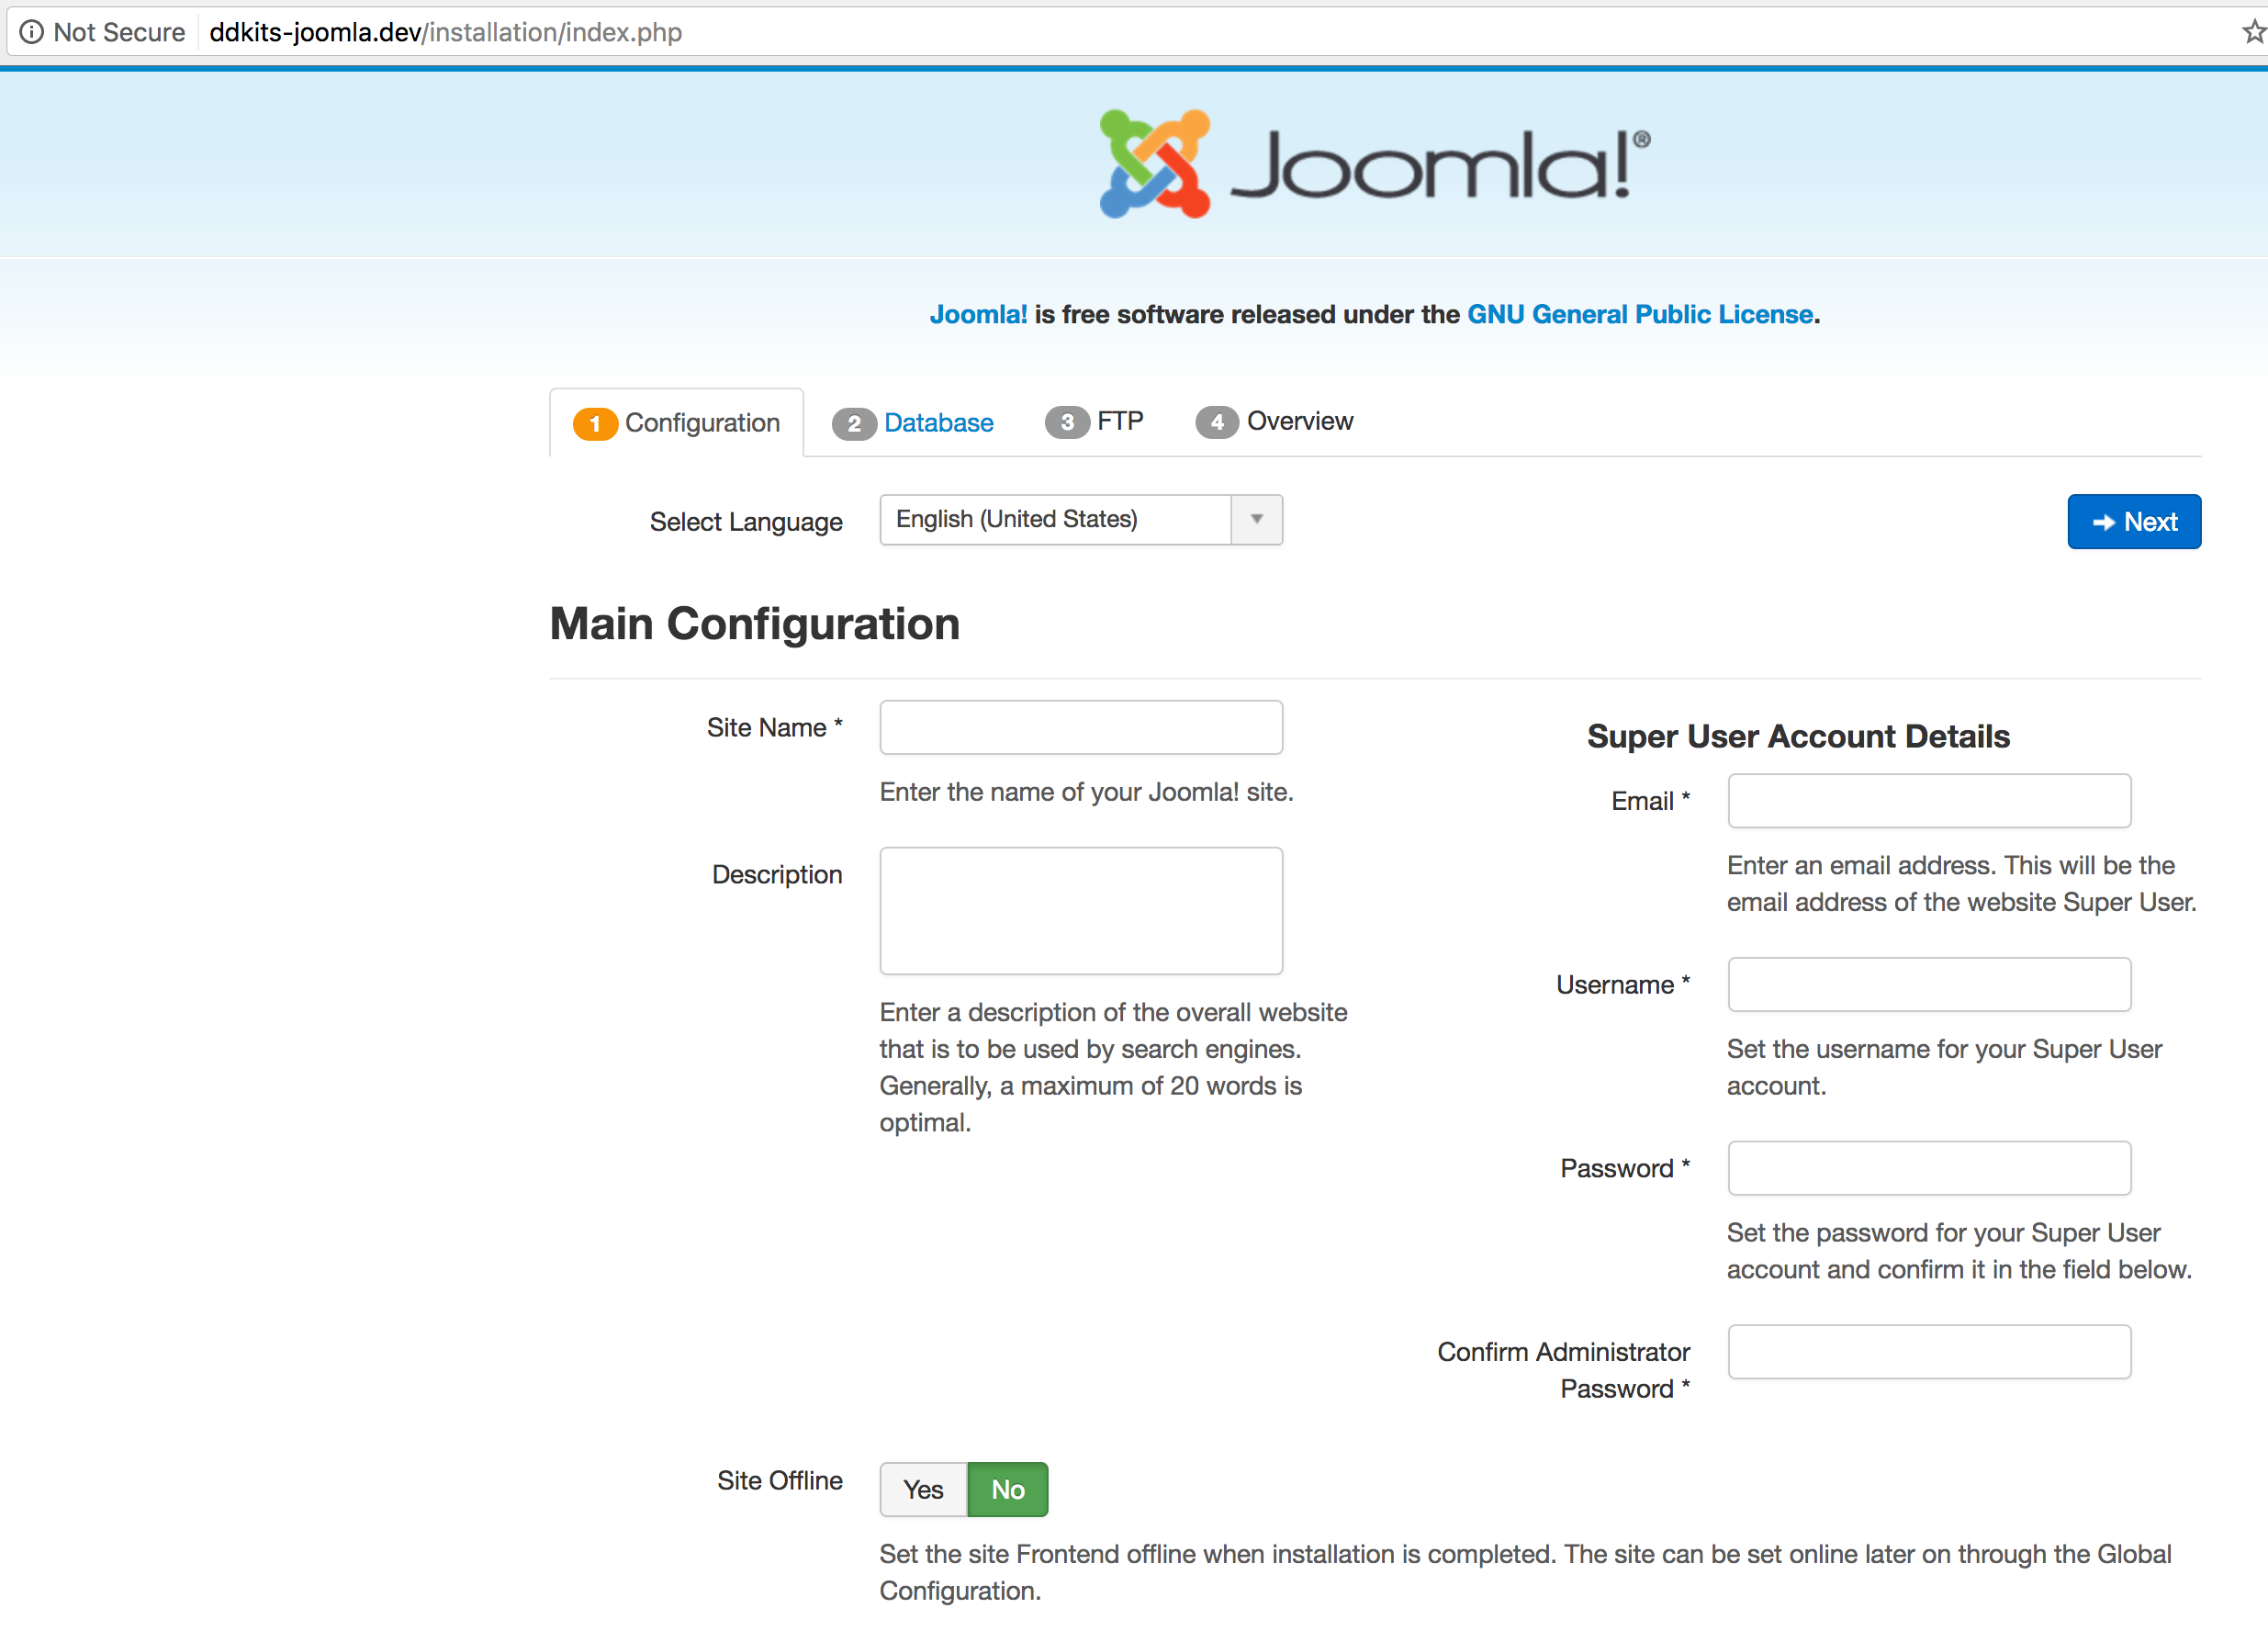 DDKits Joomla Installation